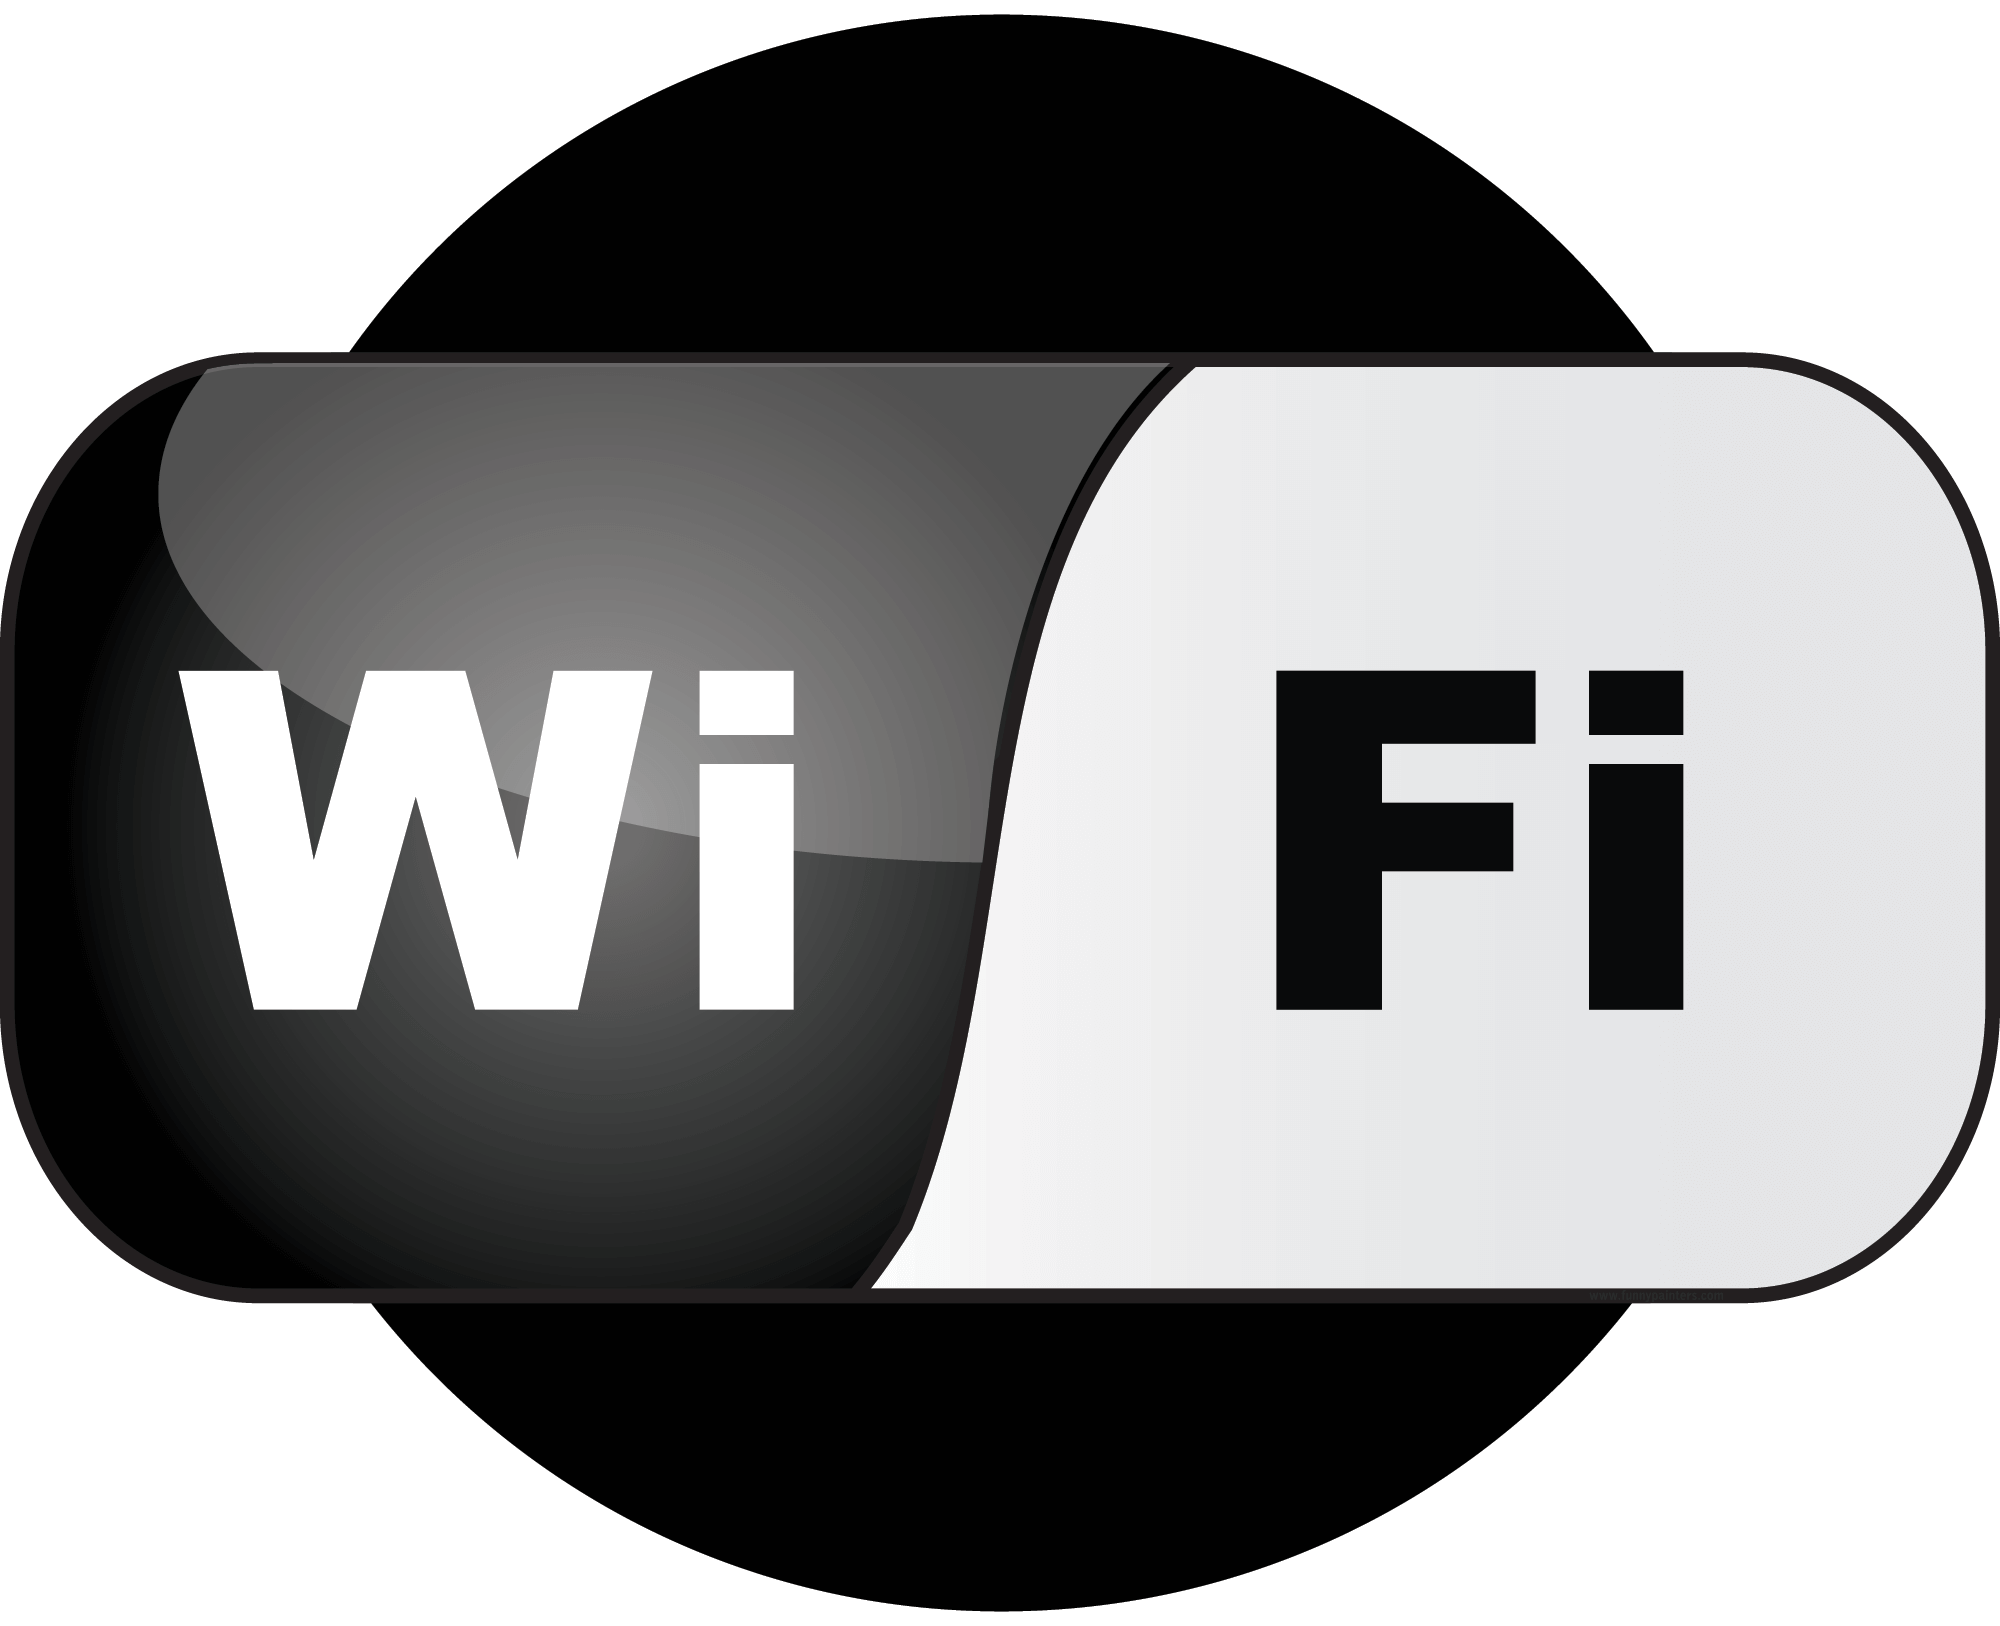 Wi-Fi logo, logotype